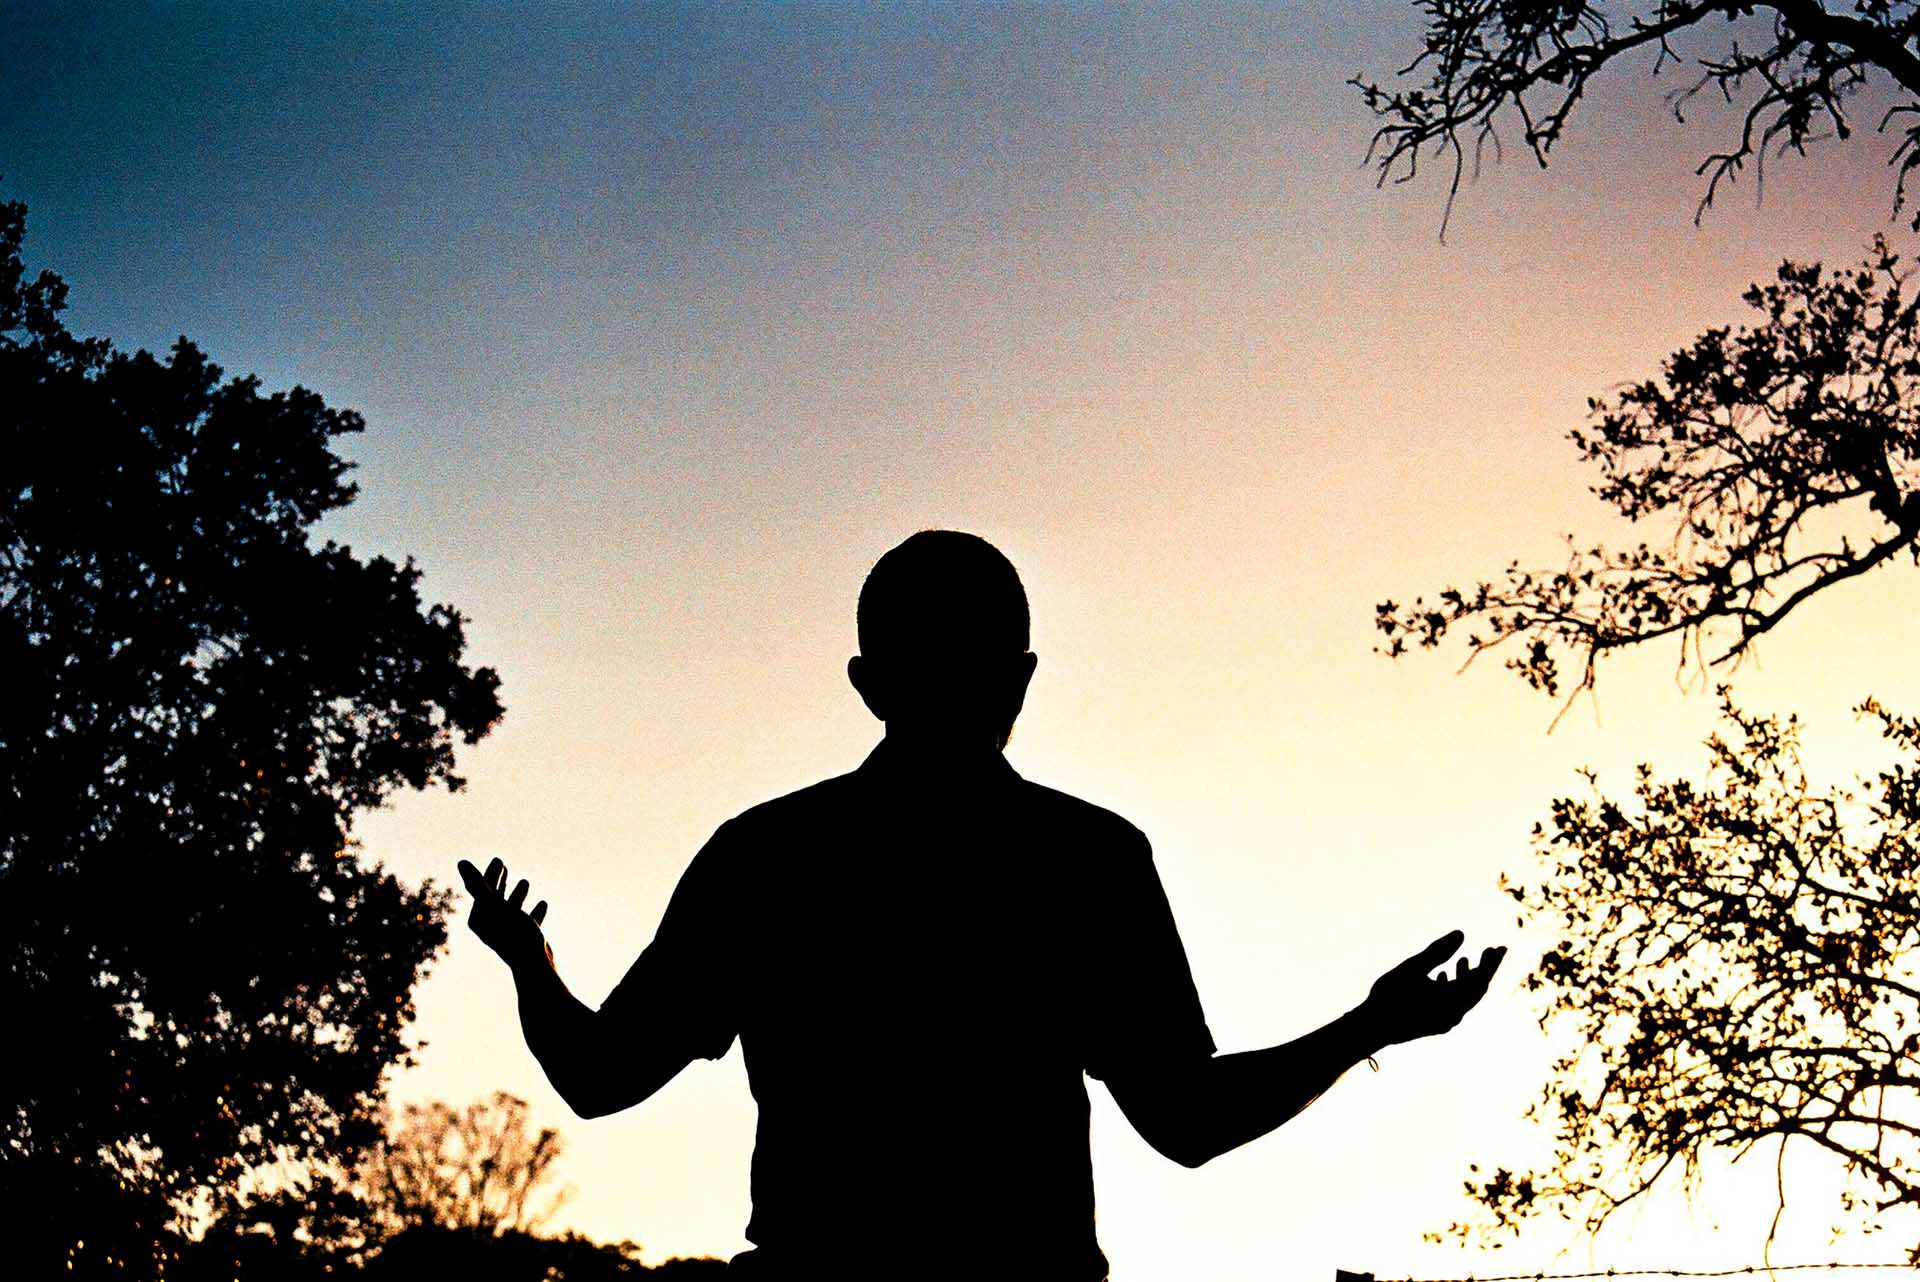 Silueta de hombre de espaldas alza las manos en oración con un fondo de amanecer